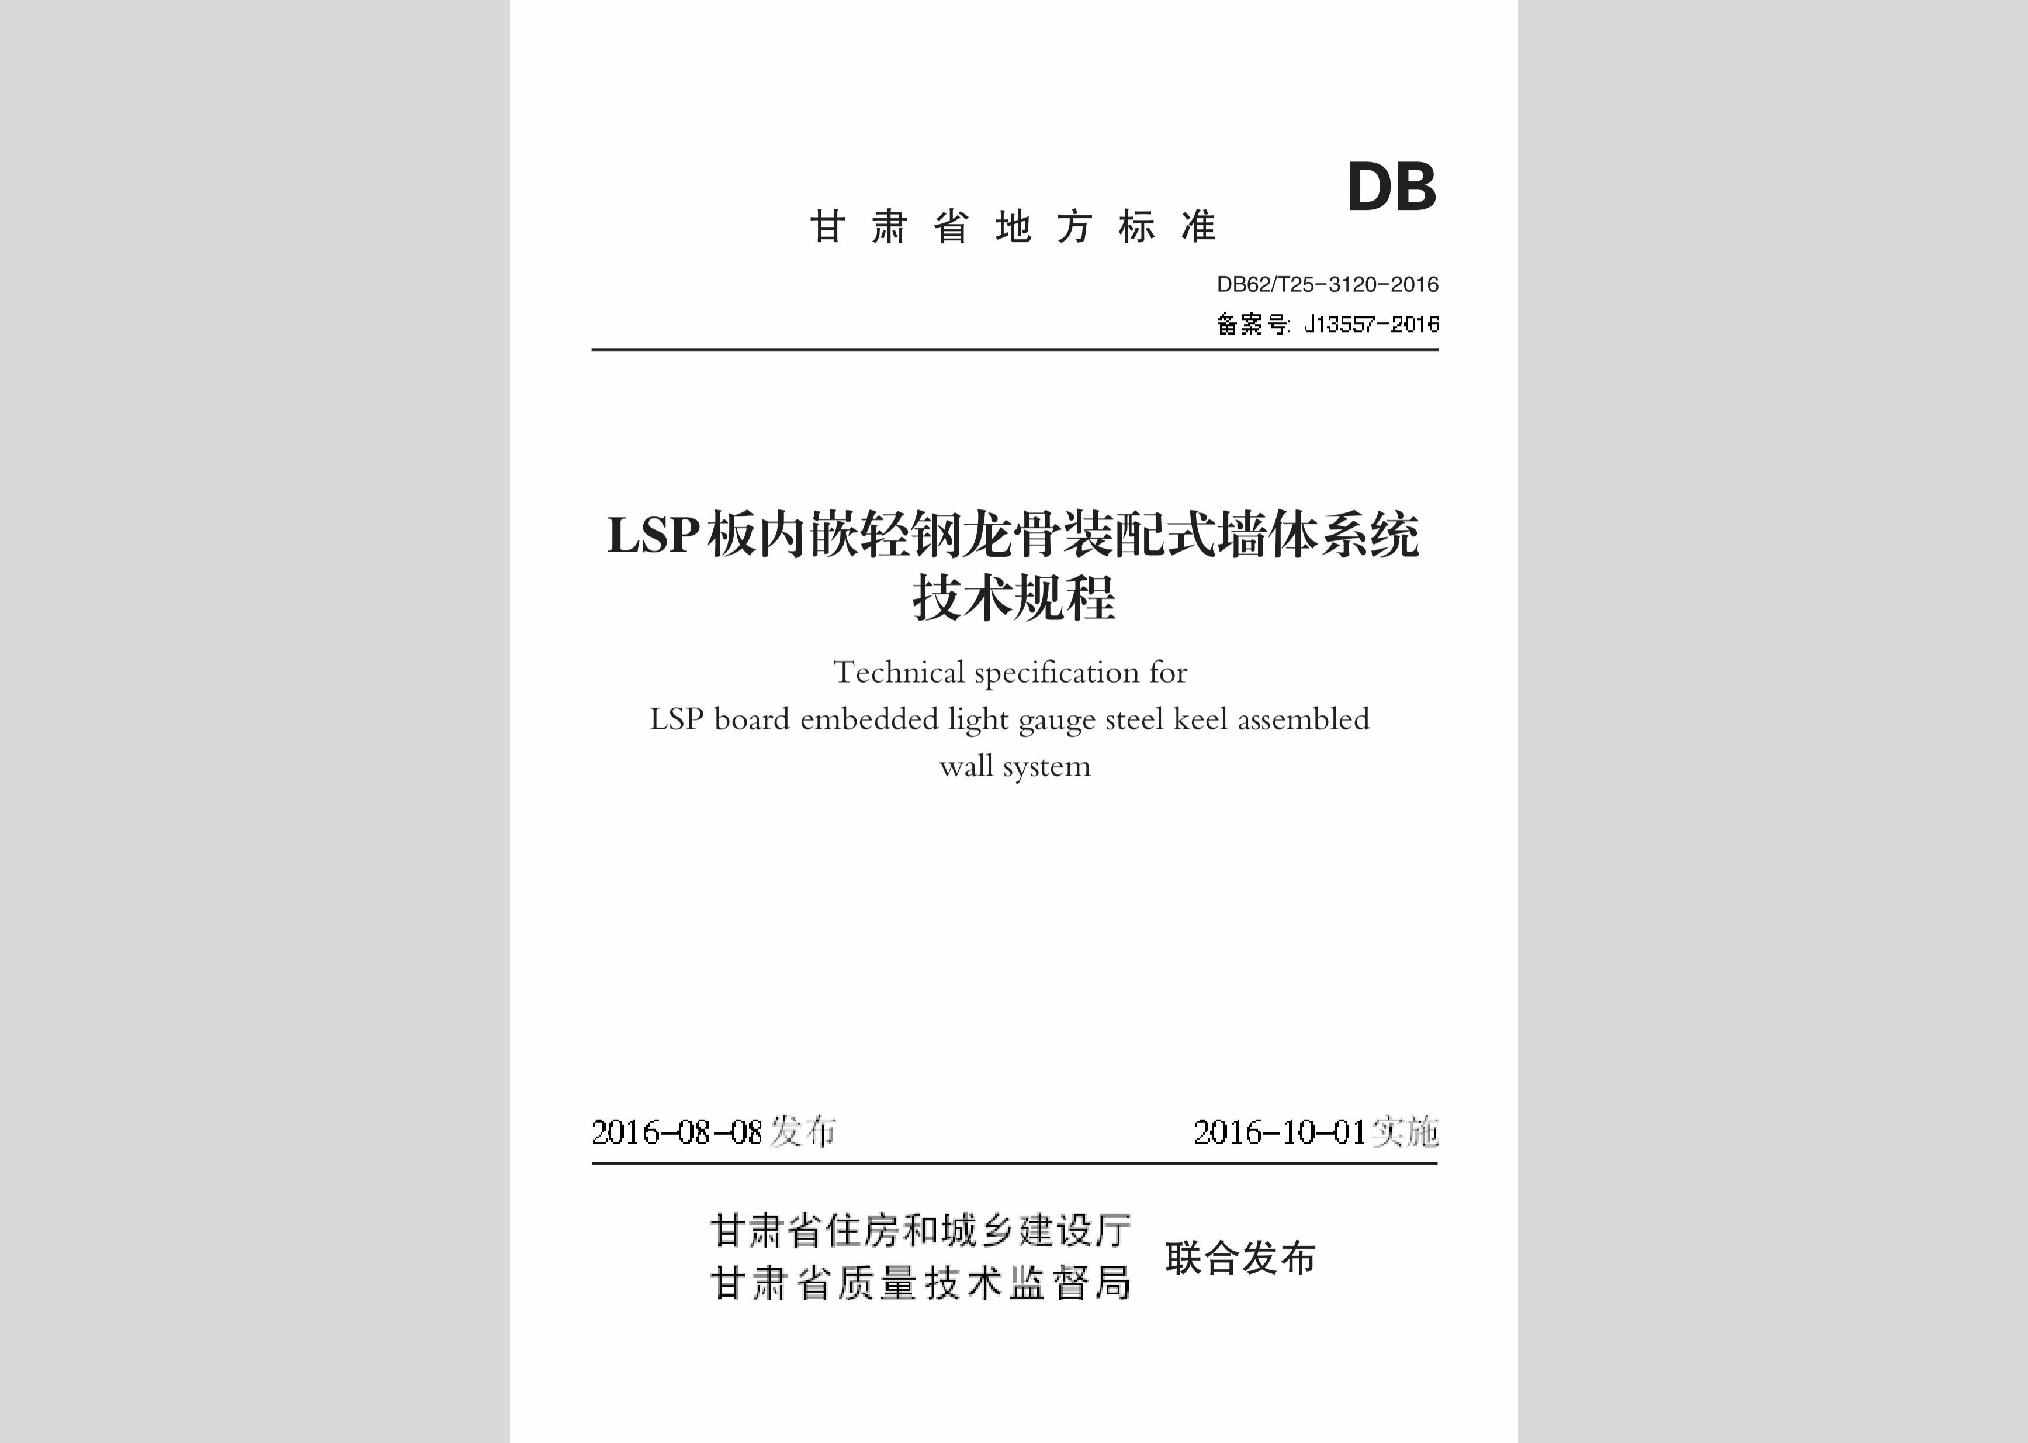 DB62/T25-3120-2016：LSP板内嵌轻钢龙骨装配式墙体系统技术规程